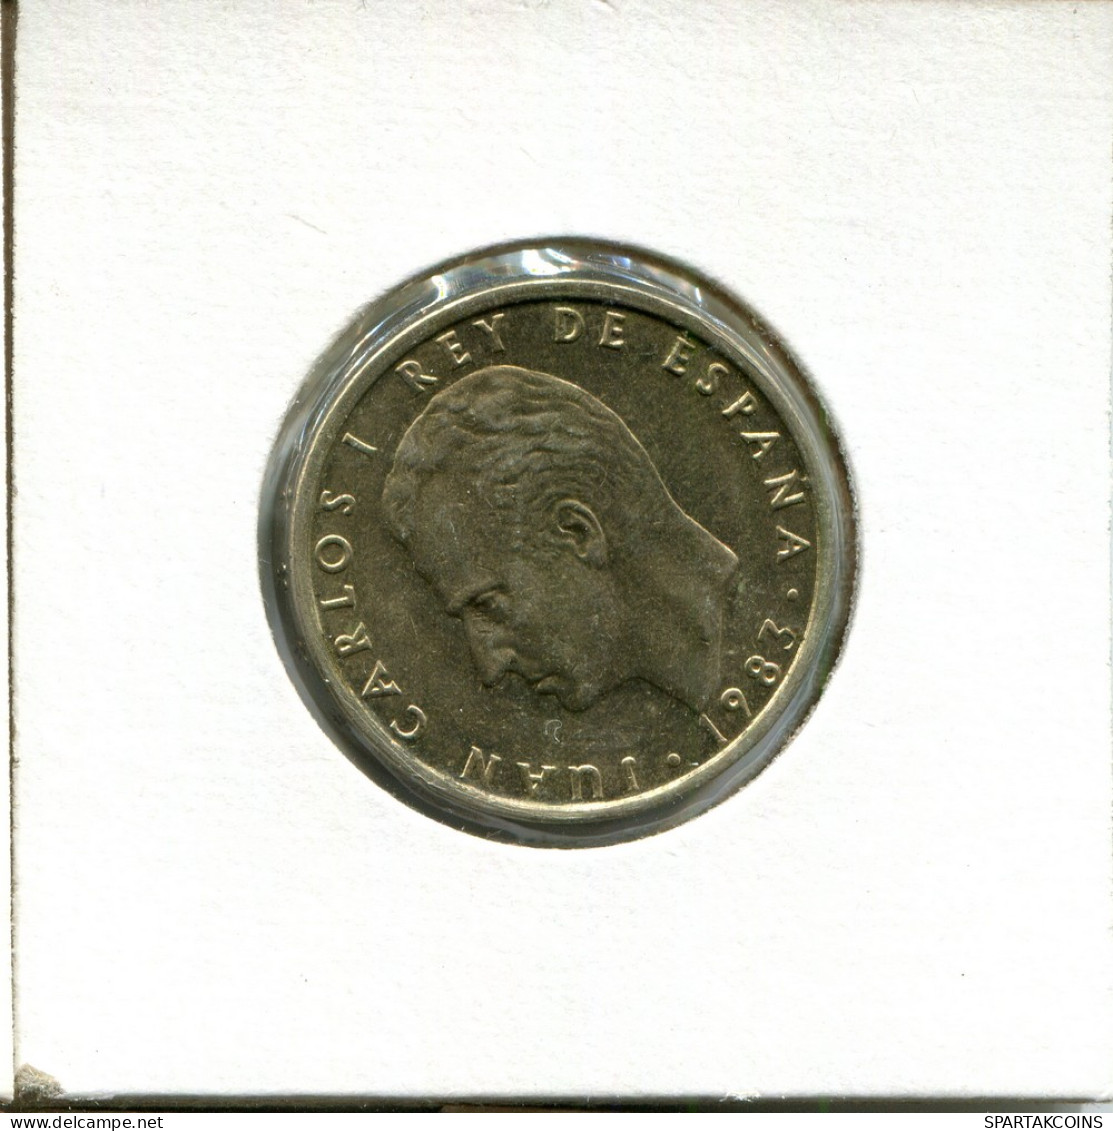 100 PESETAS 1983 SPAIN Coin #AT930.U - 100 Peseta